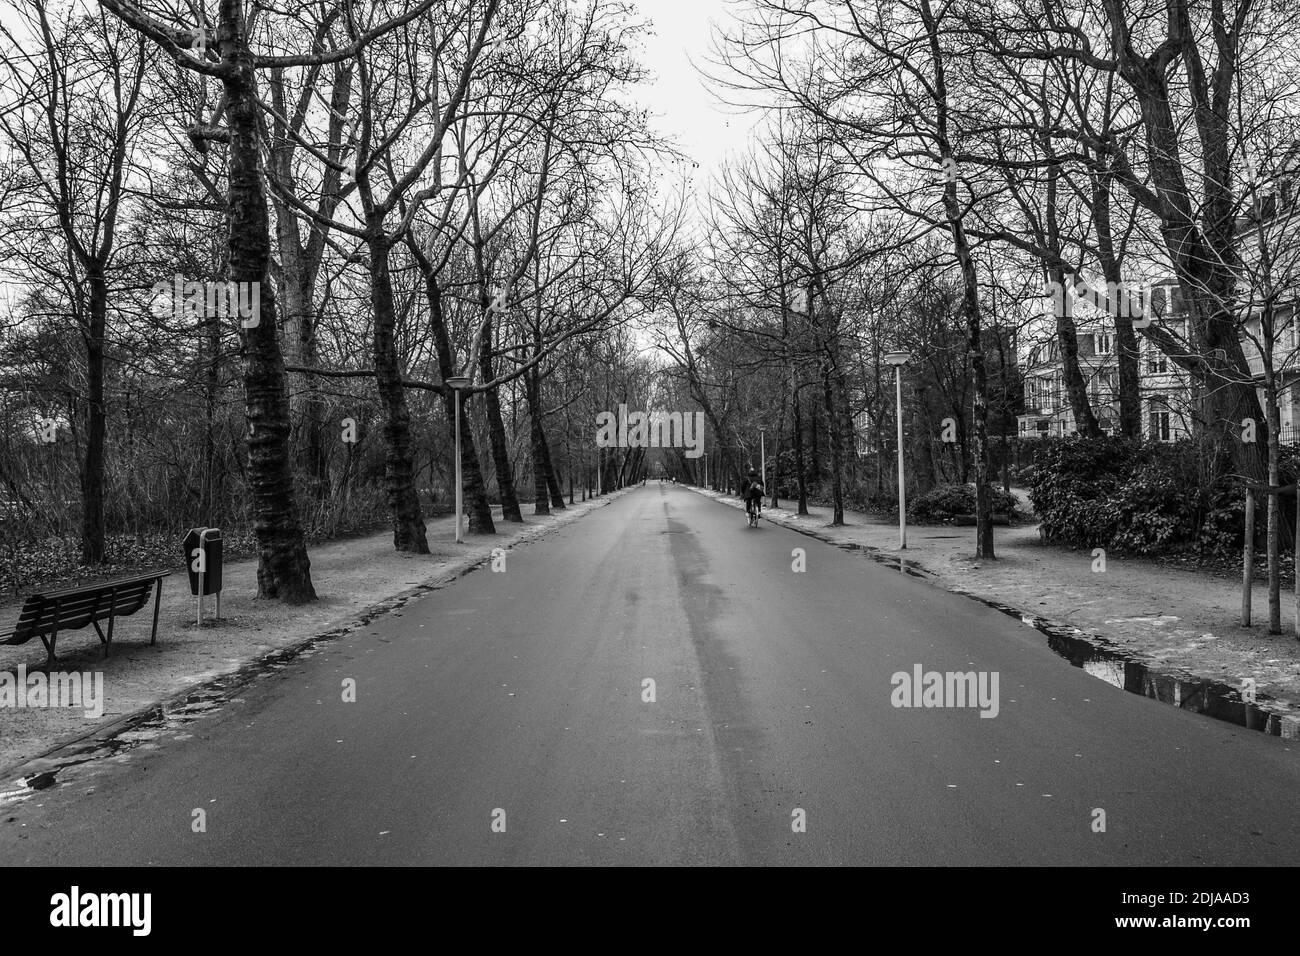 14.02.2012. Amsterdam. Pays-Bas. Route dans le Vondelpark, Amsterdam. Photo en noir et blanc. Personne faisant du vélo à l'intérieur du chemin. Banque D'Images